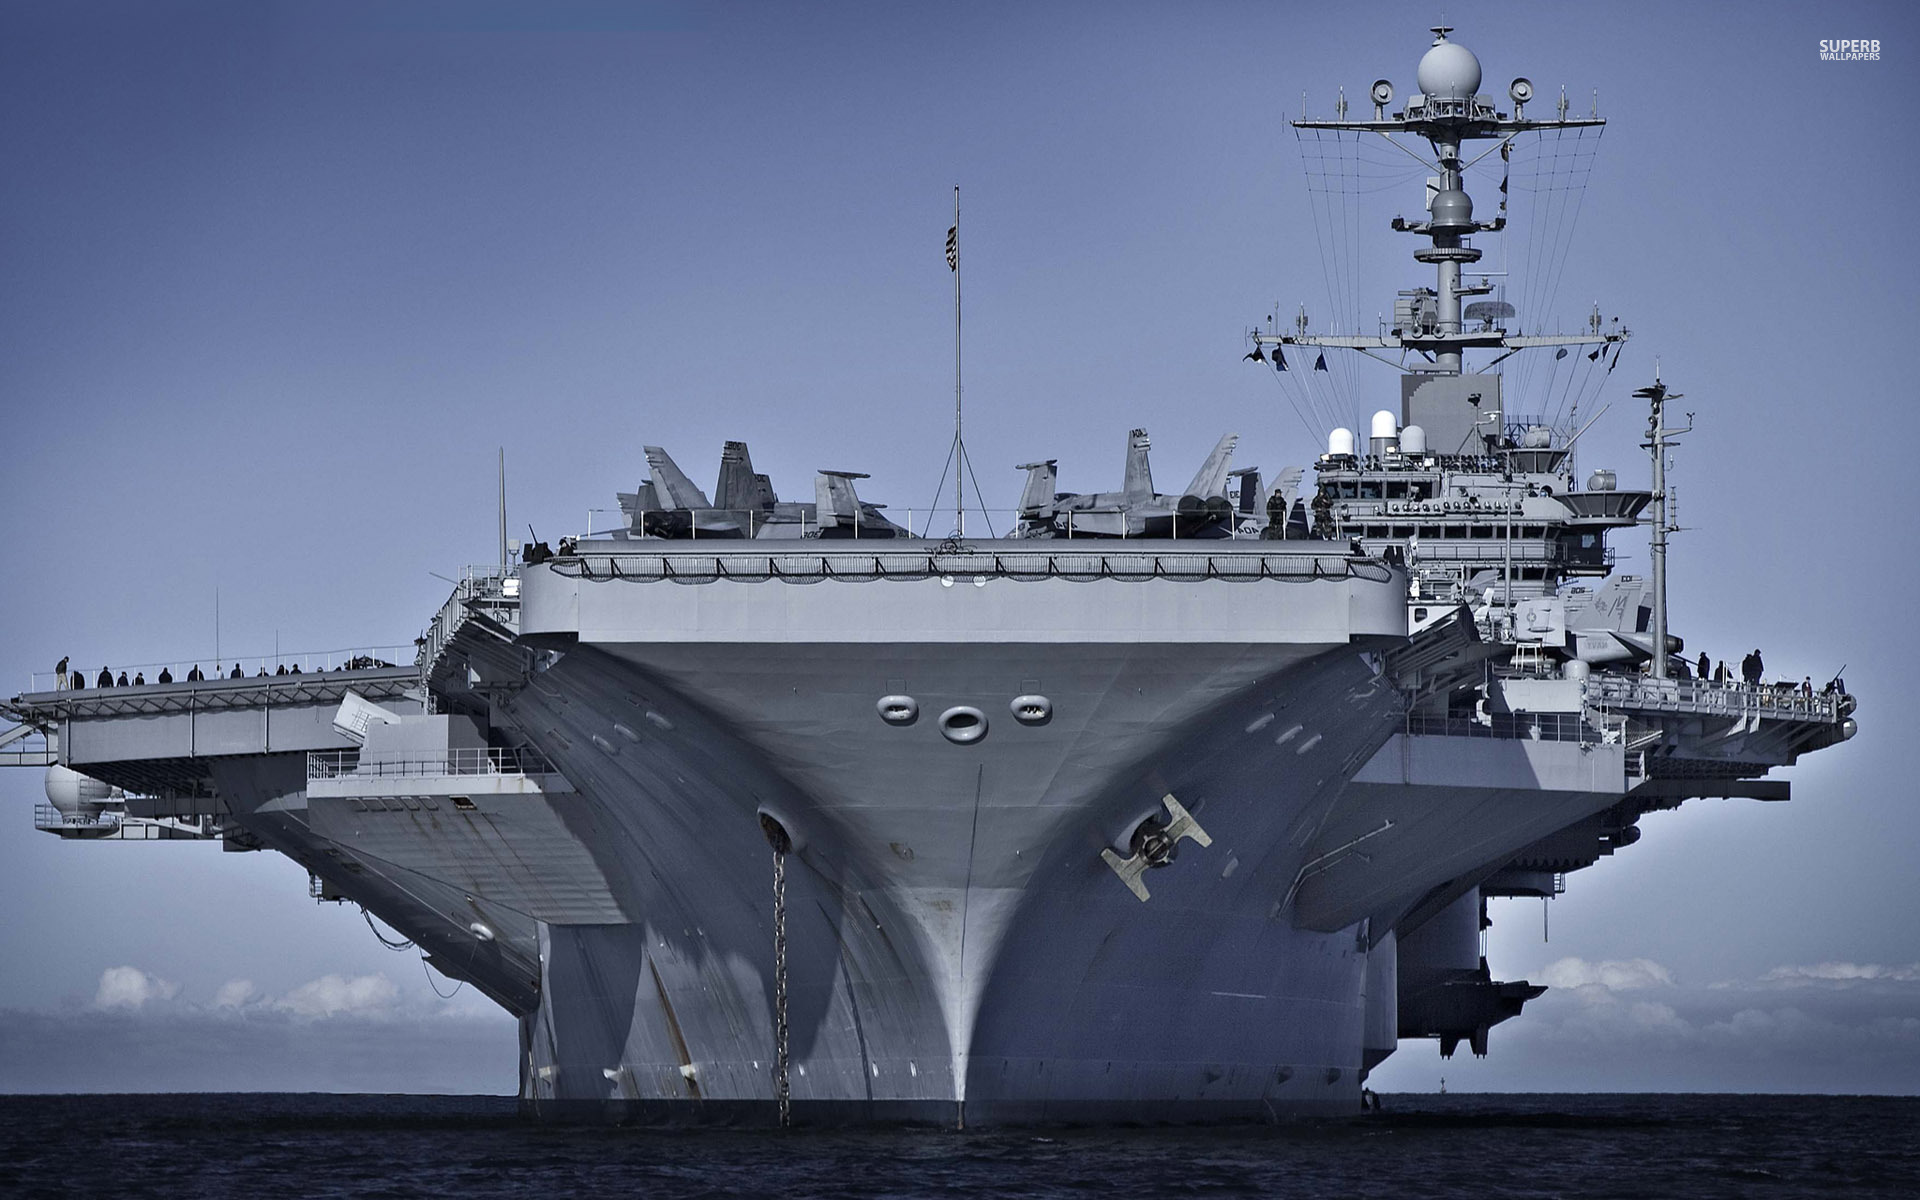 HD Navy Aircraft Carrier Ship Wallpaper for Desktop Full Size ...